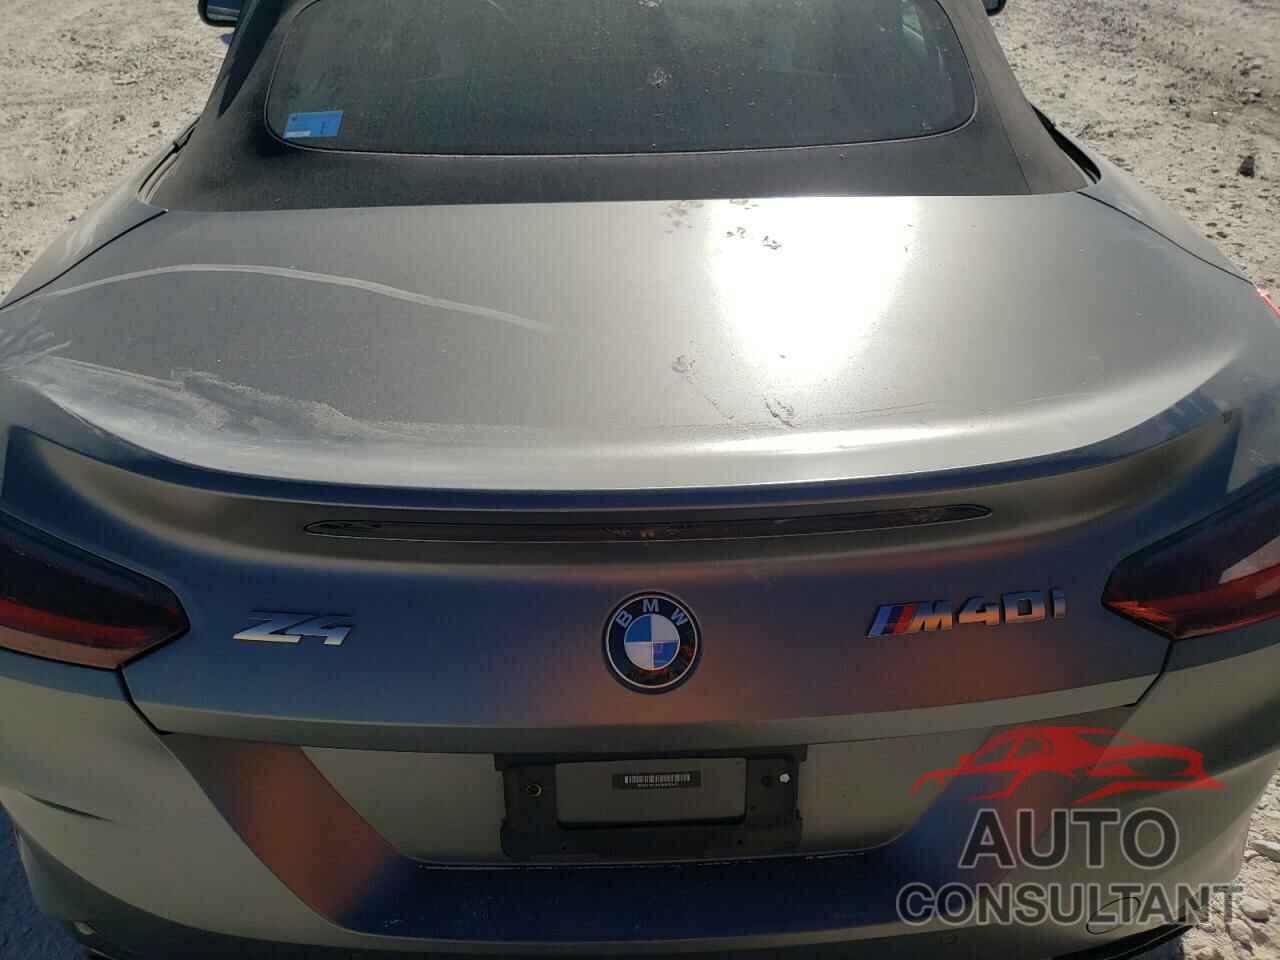 BMW Z4 2020 - WBAHF9C0XLWW40572